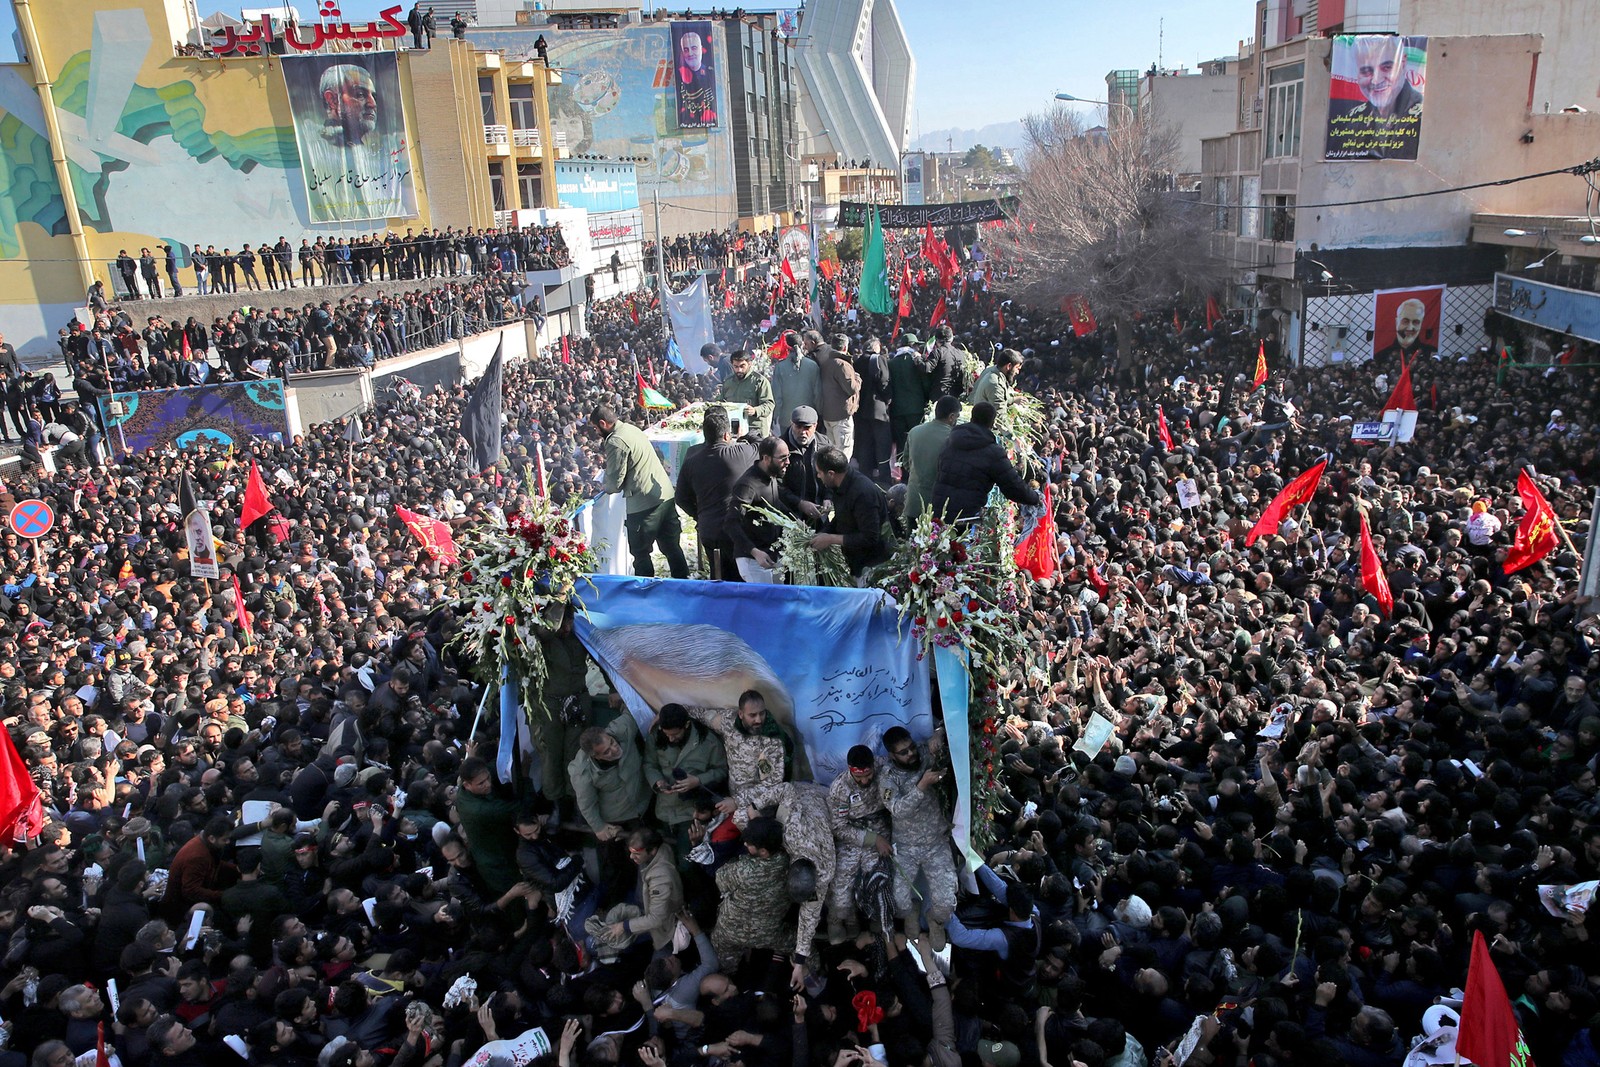 Tumulto em funeral de general iraniano deixa ao menos 50 mortos em sua cidade natal (Foto: Erfan Kouchari / Agência de Notícias Tasnim via AP)